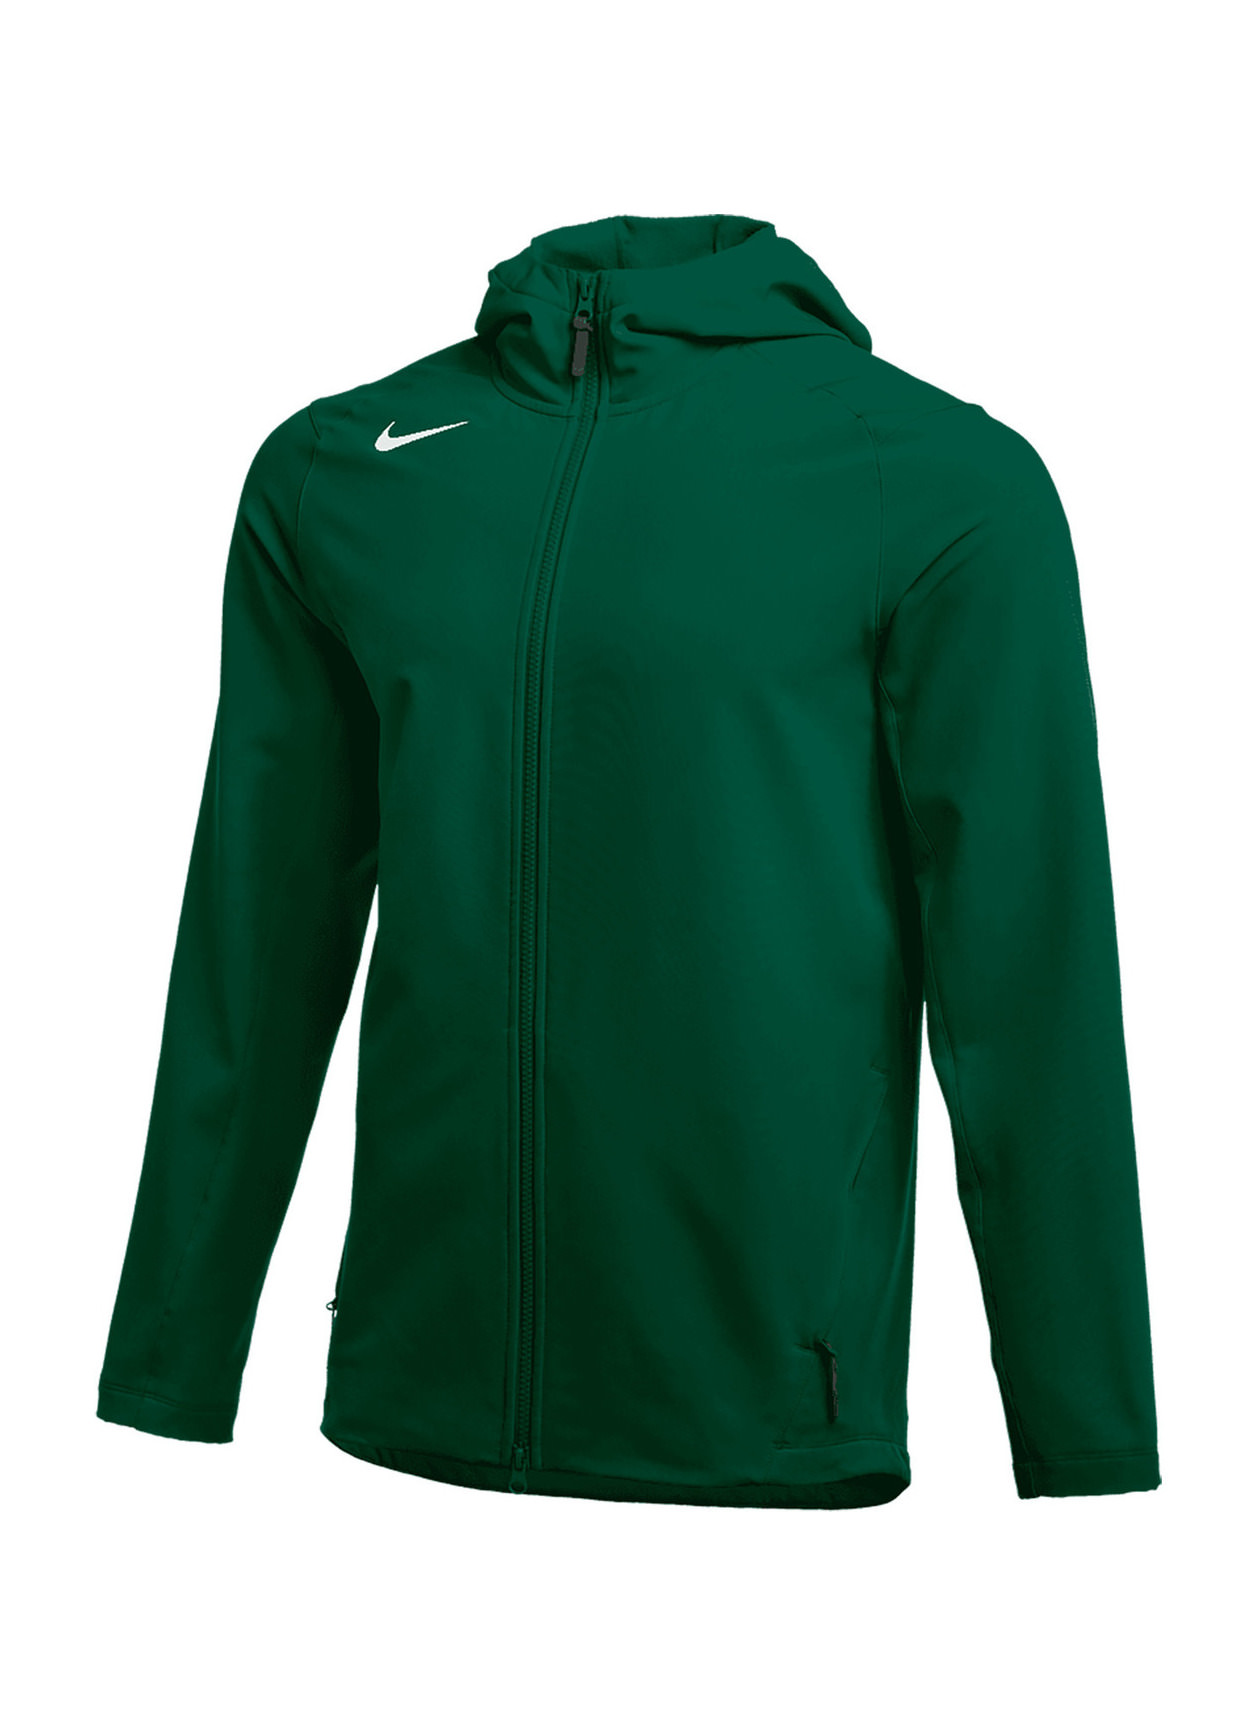 Nike Men's Team Dark Green / White Full Zip Heavy Jacket